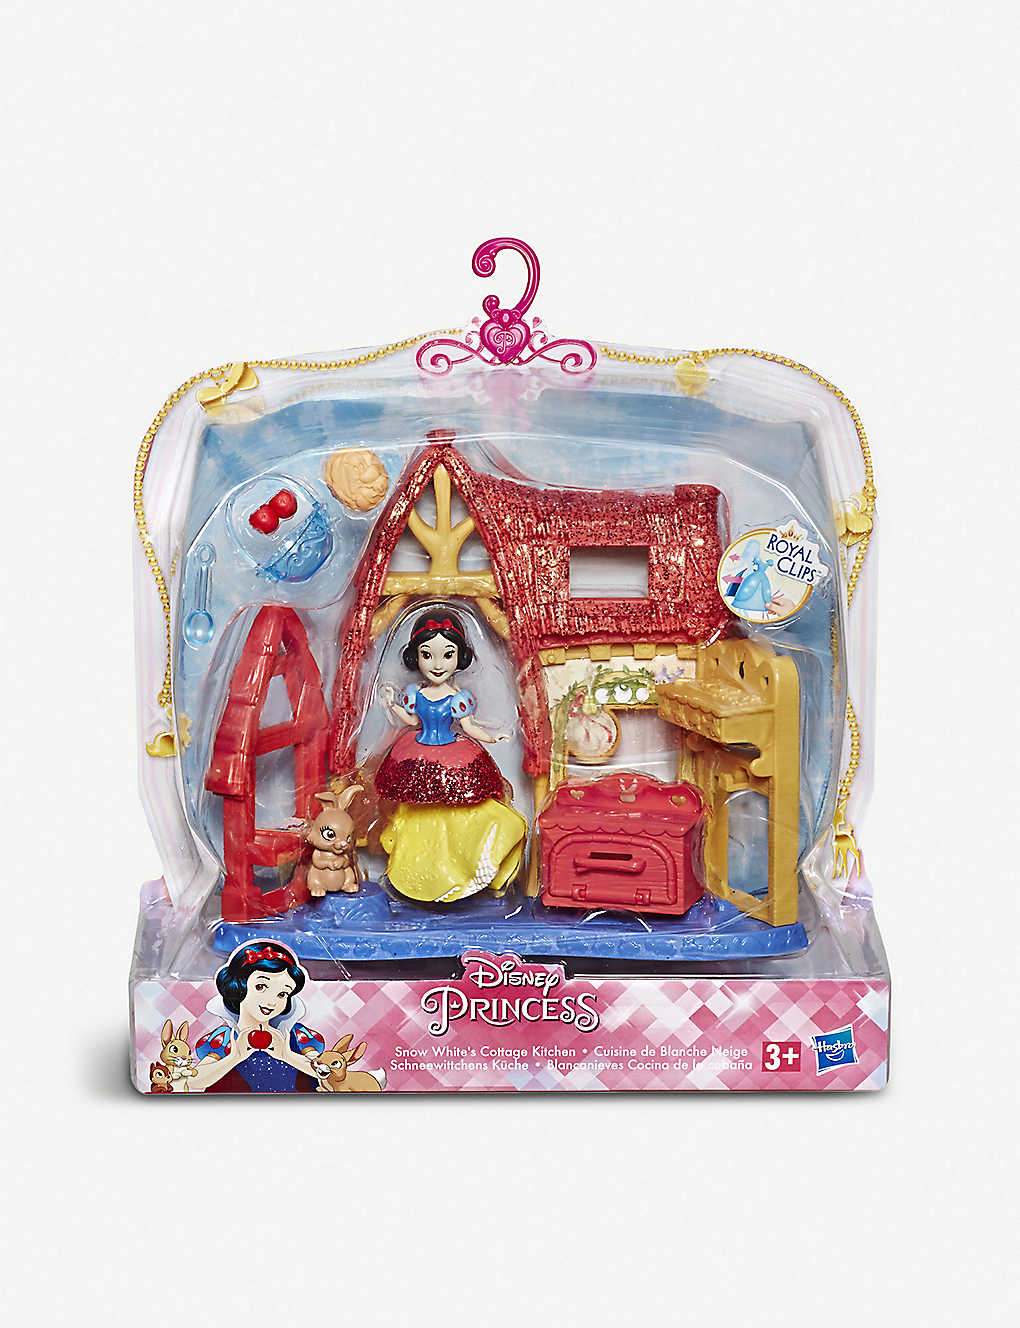 DISNEY PRINCESS Snow White’s Cottage Kitchen play set